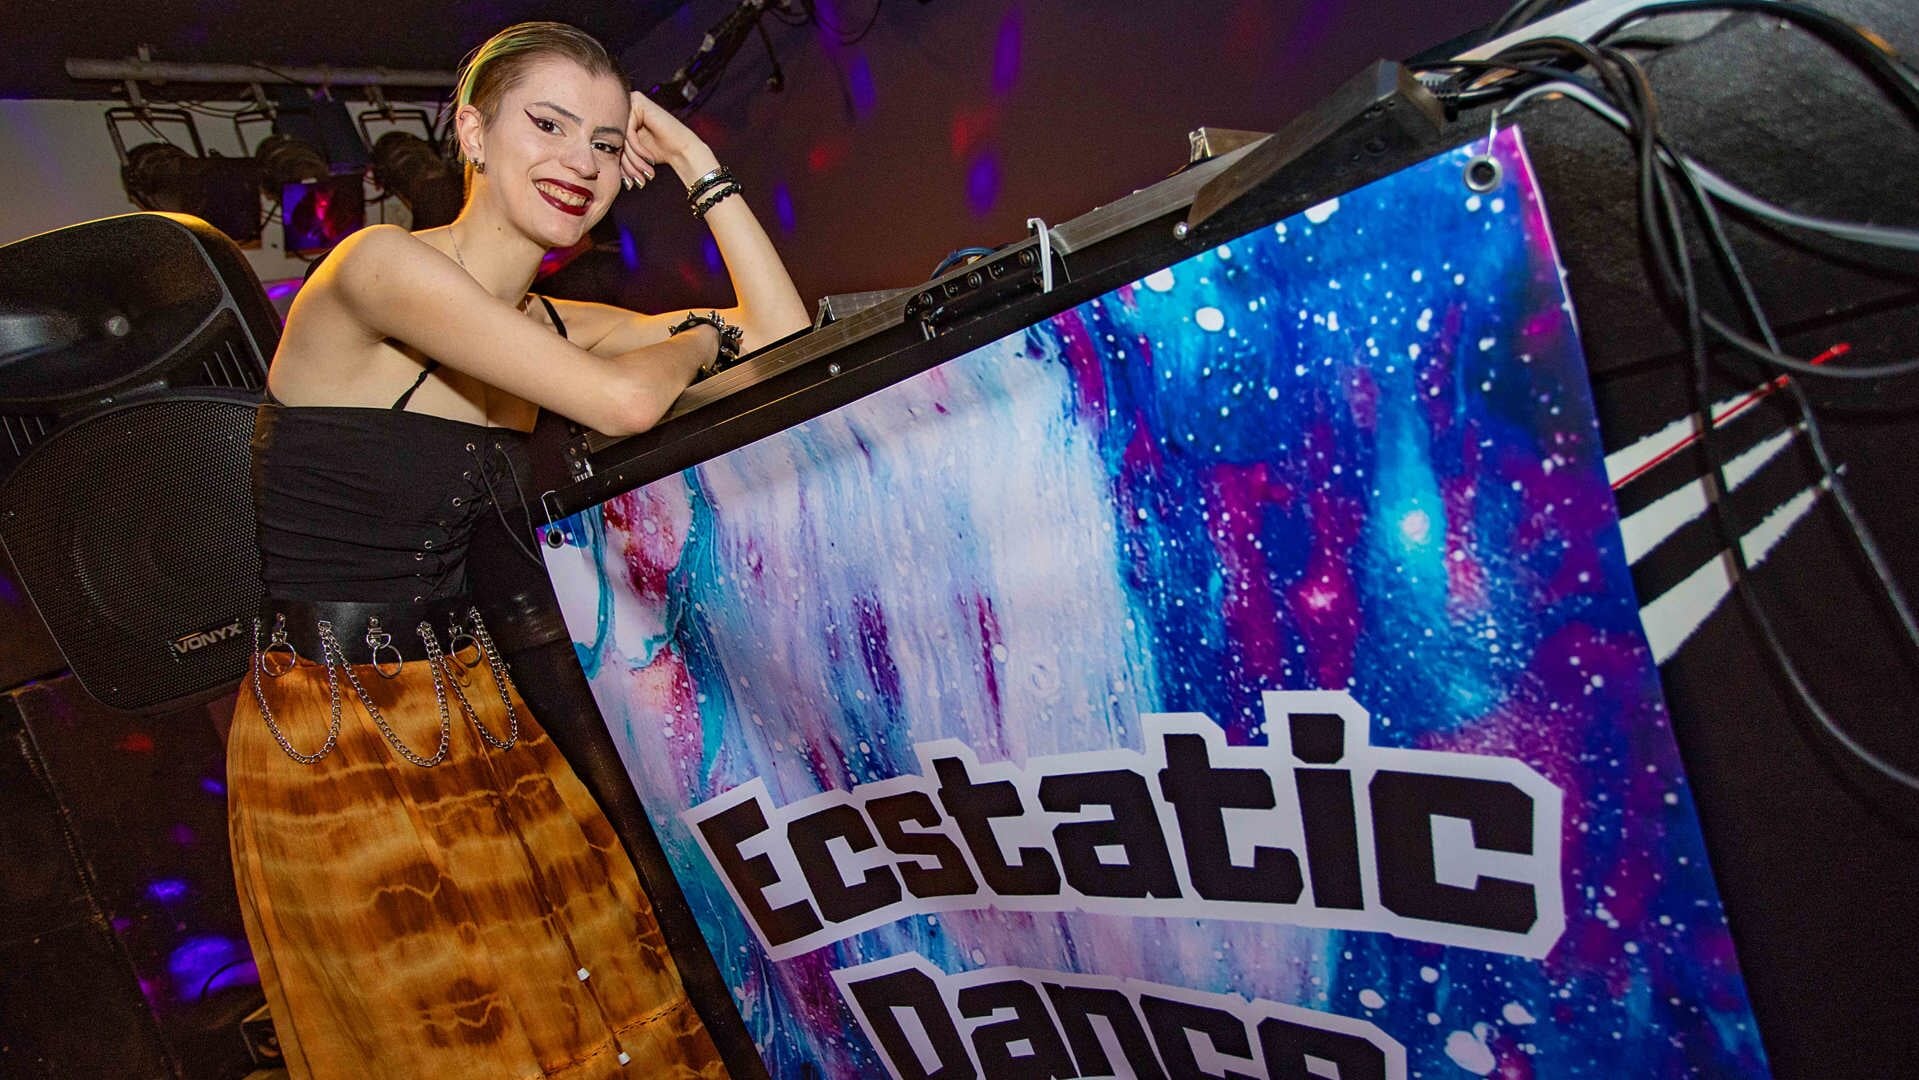 Lisa Brouwer wil graag haar positieve ervaringen met Ecstatic Dance delen.